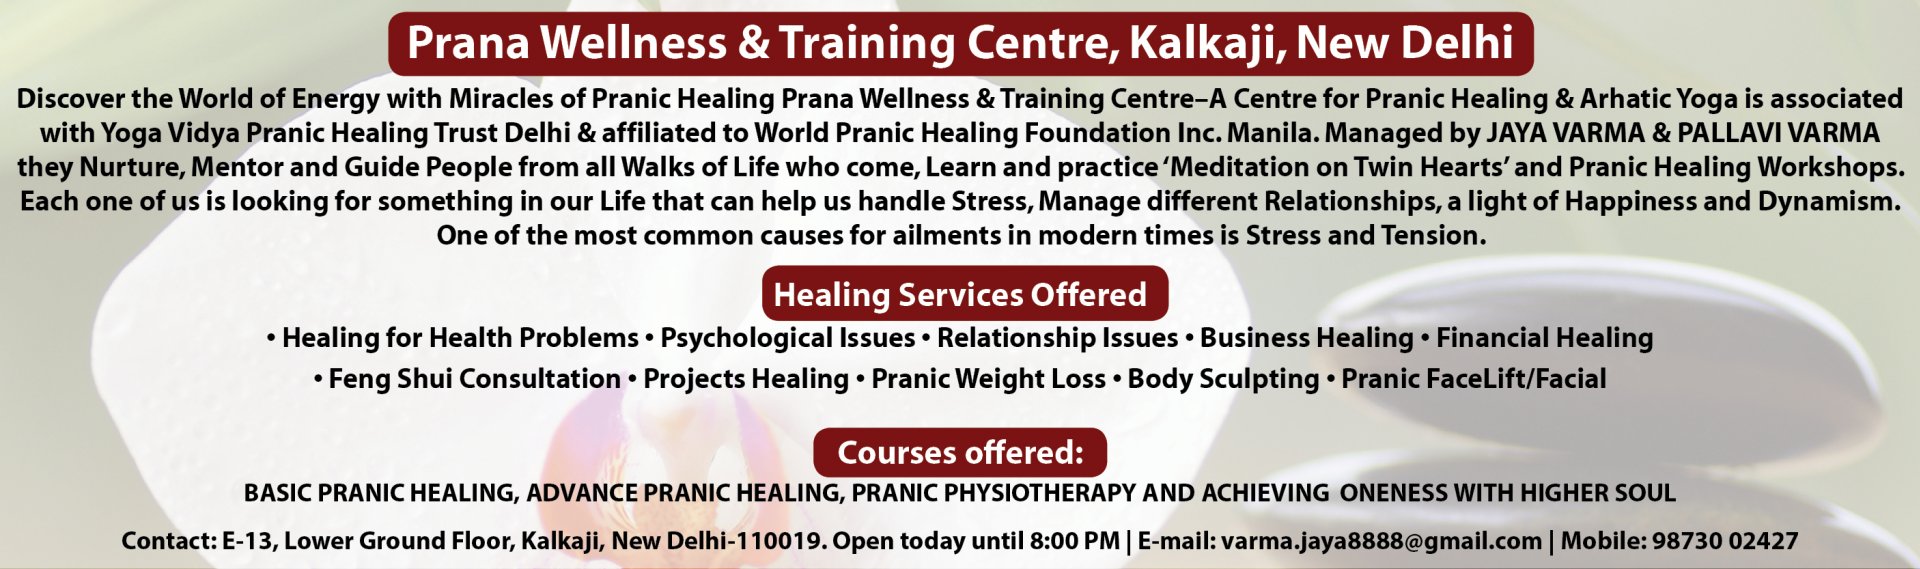 Prana Wellness & Training Centre